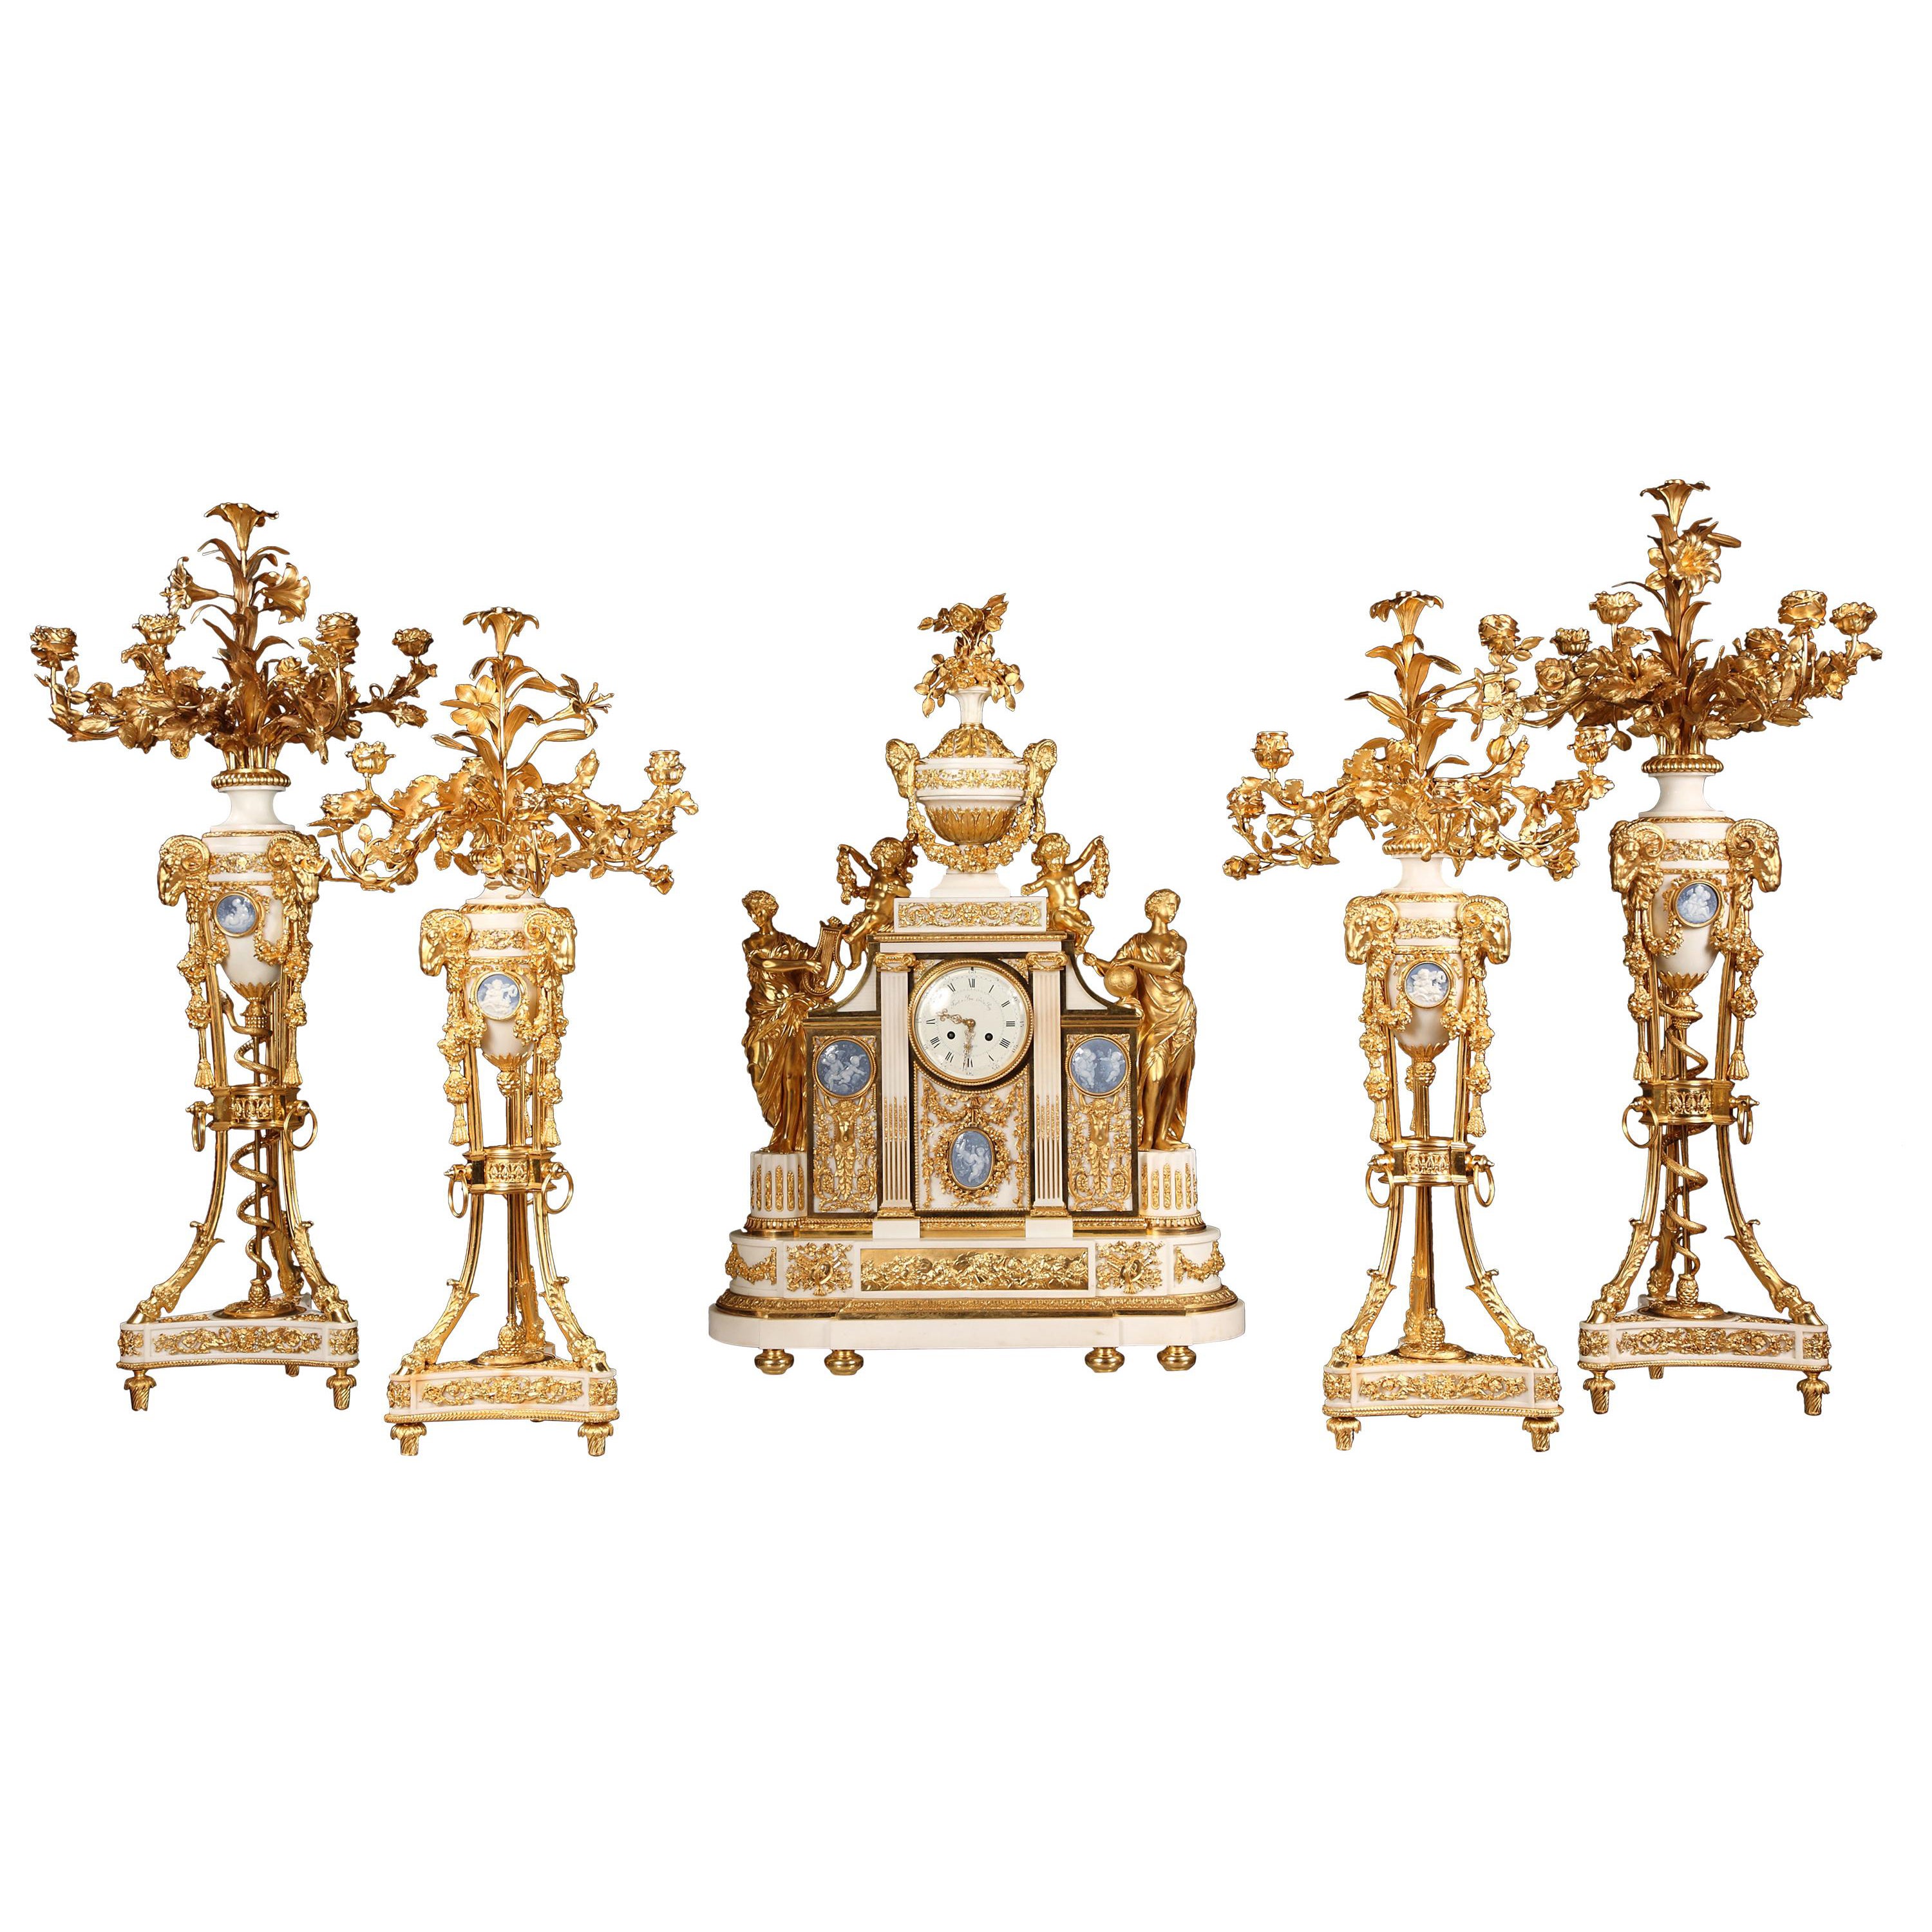 Importante pendule à cinq pièces en marbre et bronze doré, France, vers 1860